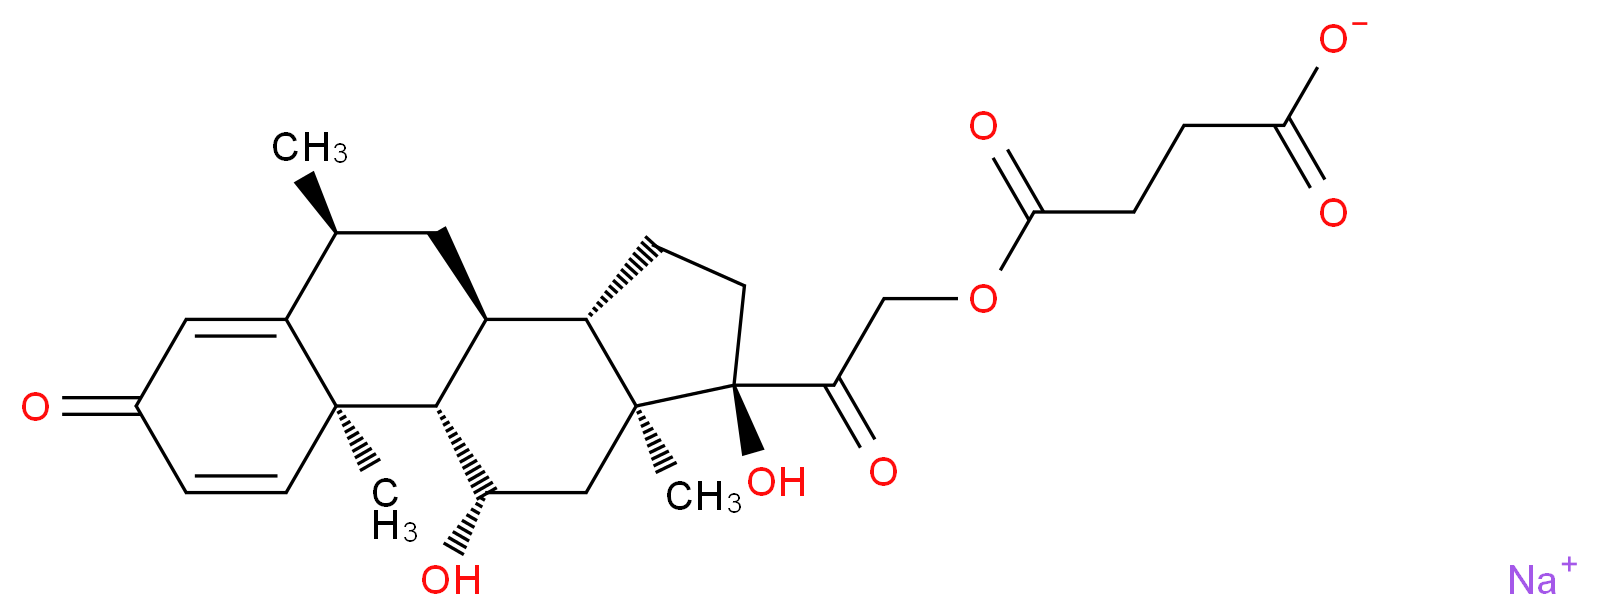 6α-Methylprednisolone 21-hemisuccinate sodium salt_Molecular_structure_CAS_2375-03-3)